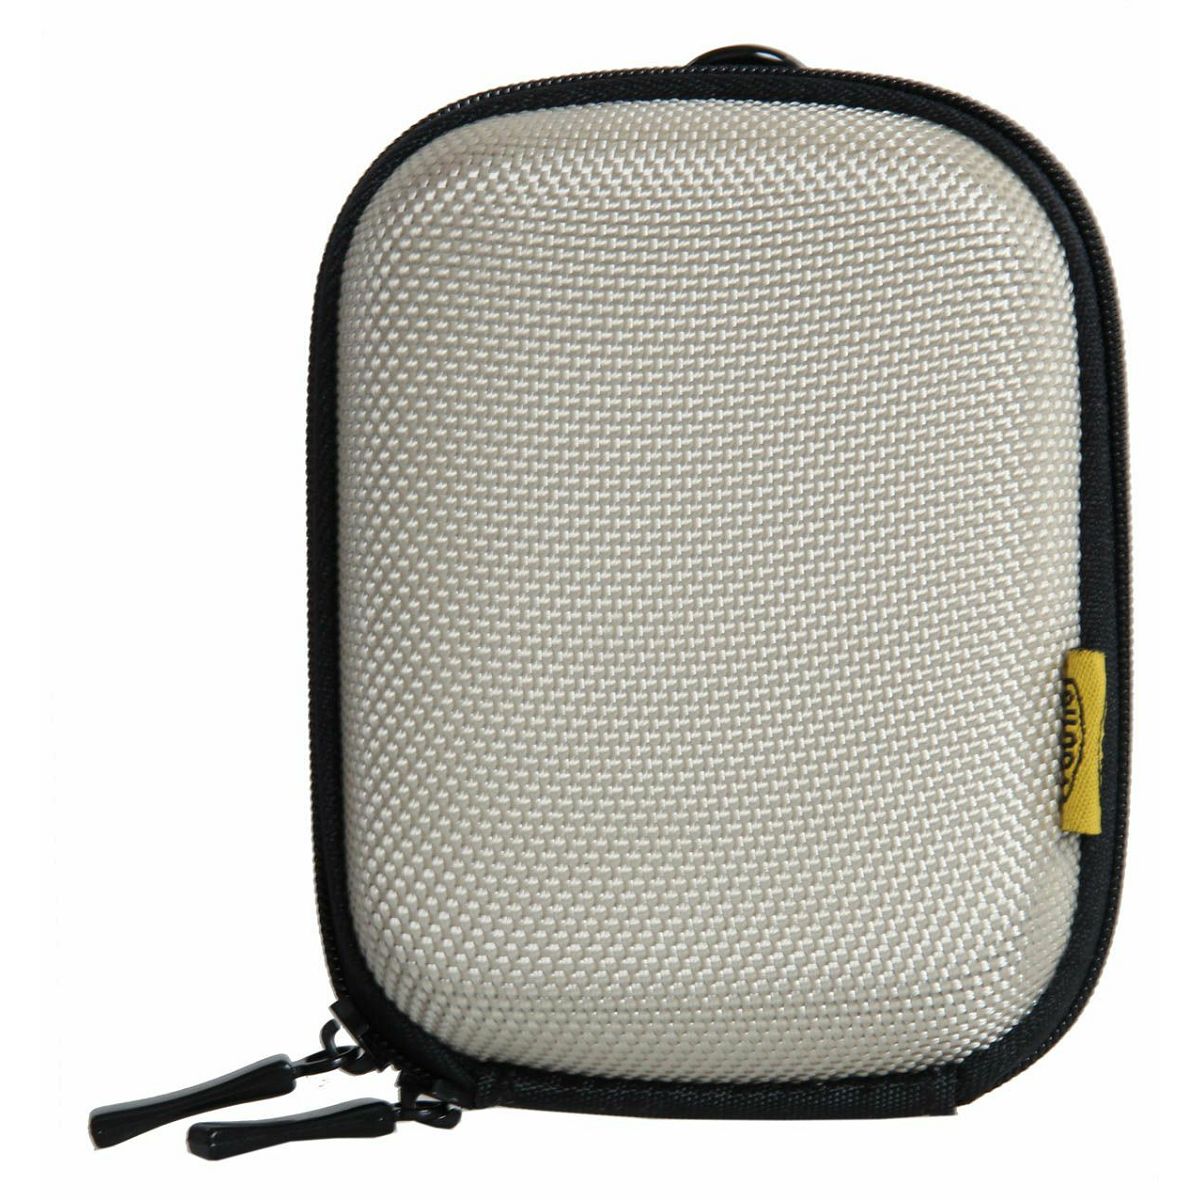 Bilora Shell Bag IV Sand (364-6) torbica futrola za kompaktni fotoaparat